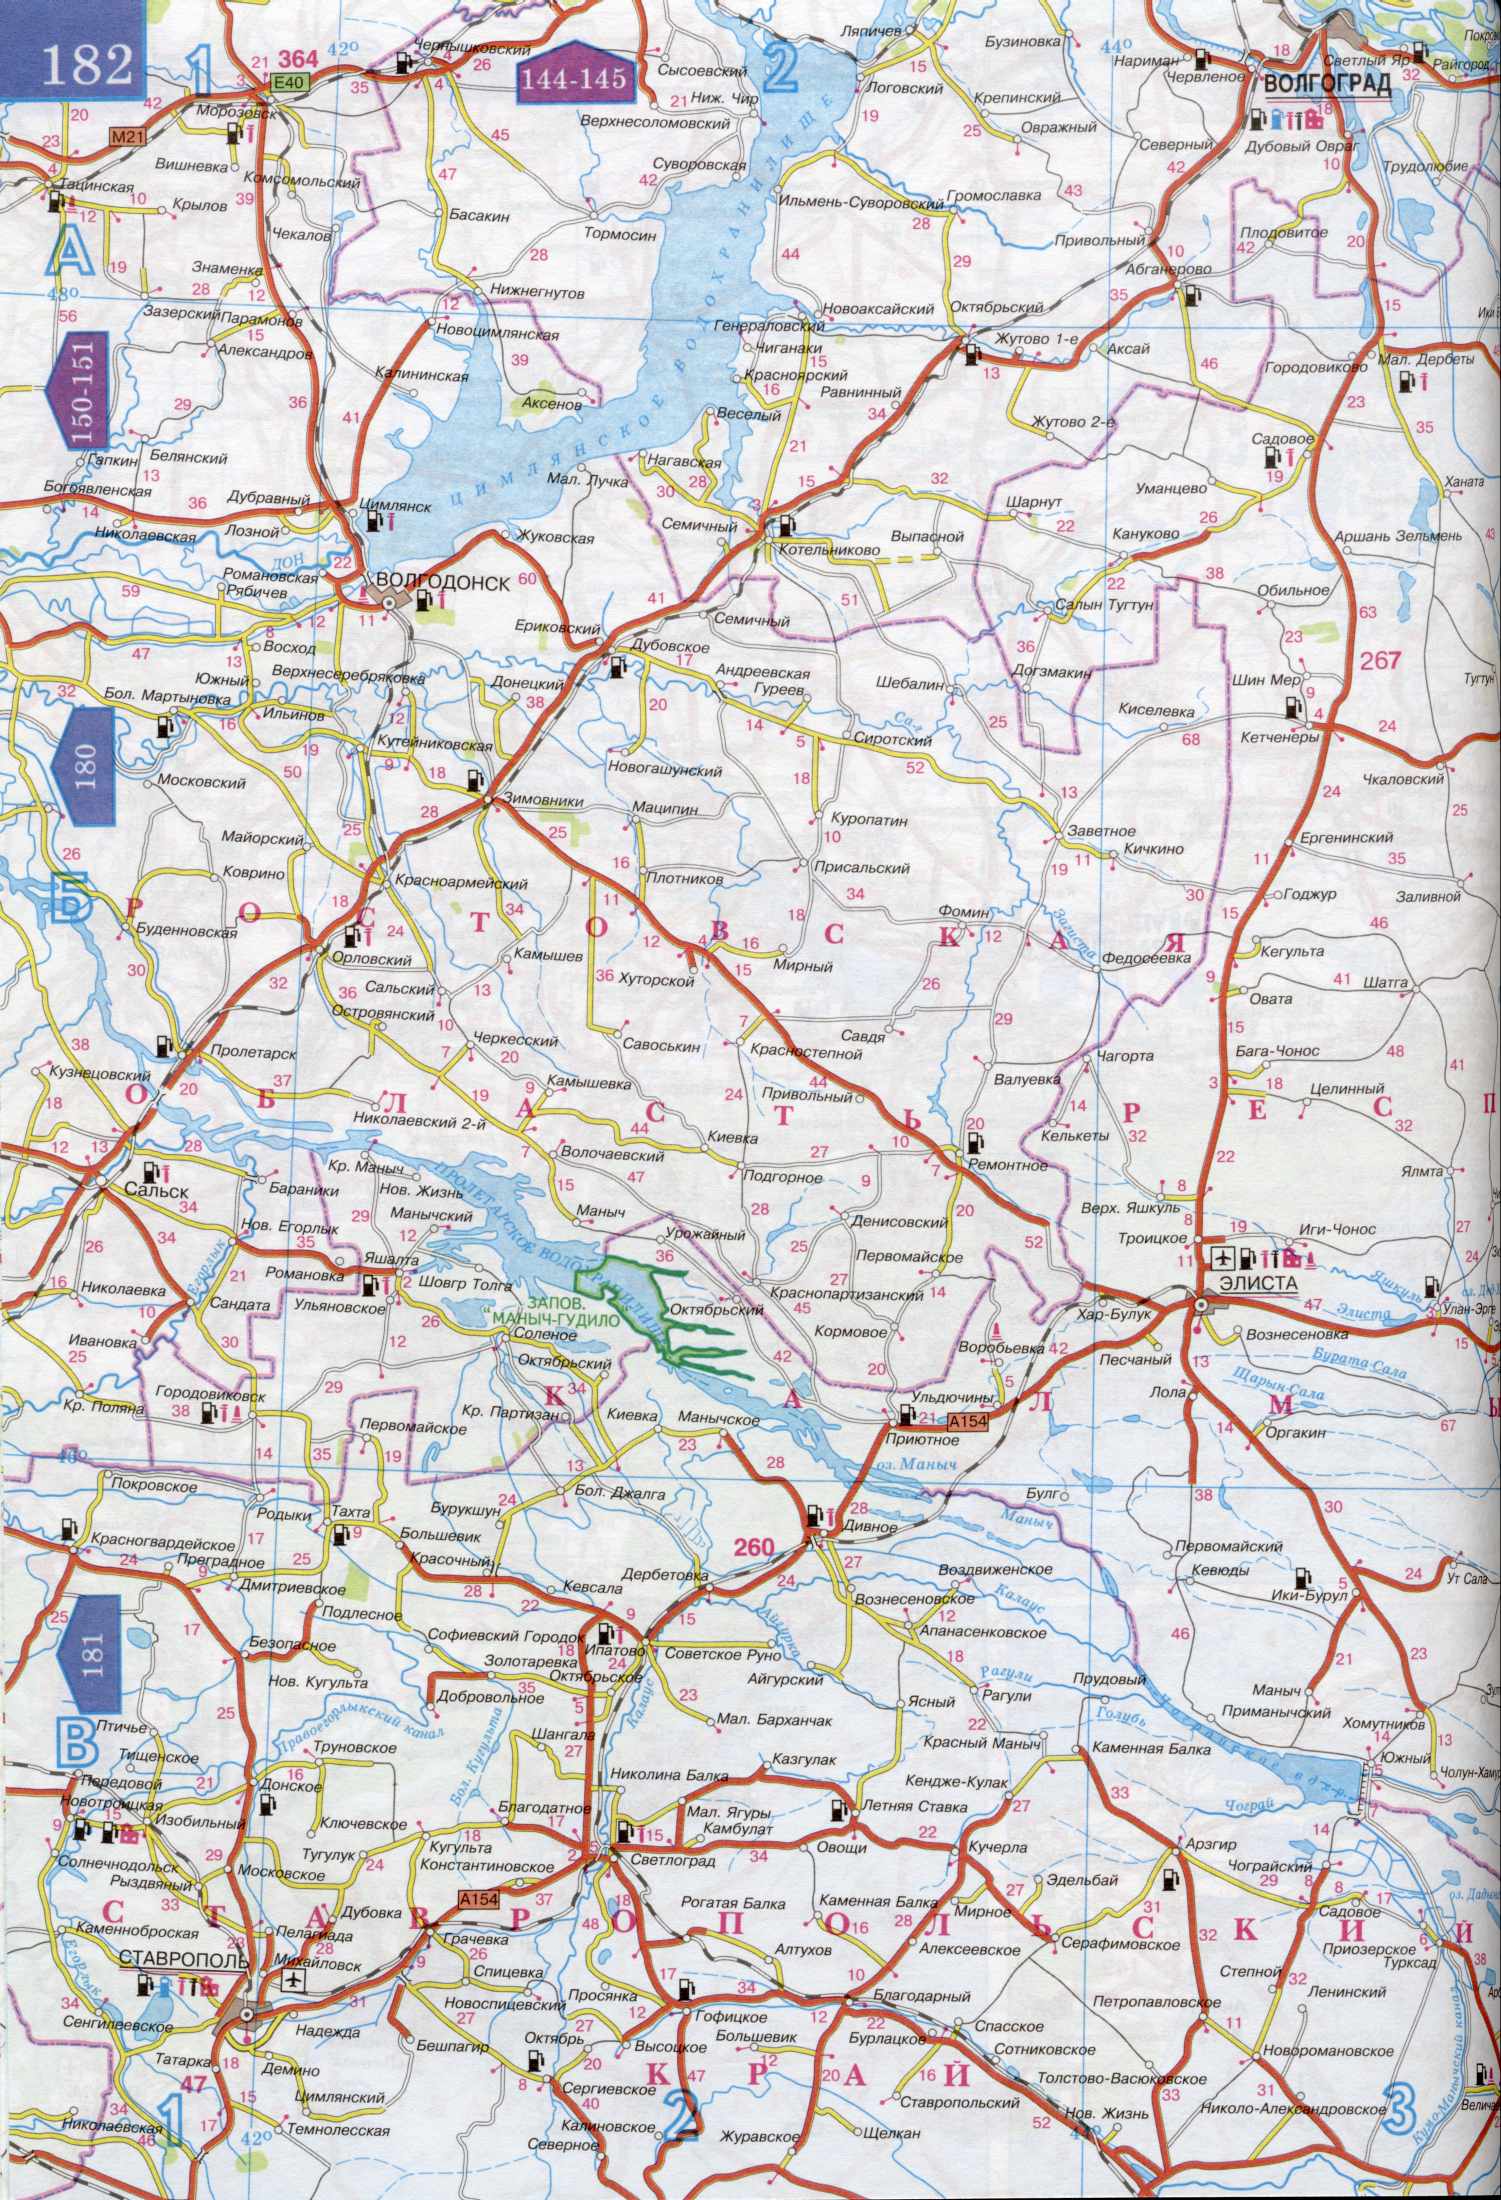 Карта Ставропольского края и Калмыкии. Карта автомобильных дорог - Ставропольский край, Дагестан, Калмыкия. Скачать бесплатно подробную карту , A0 - 